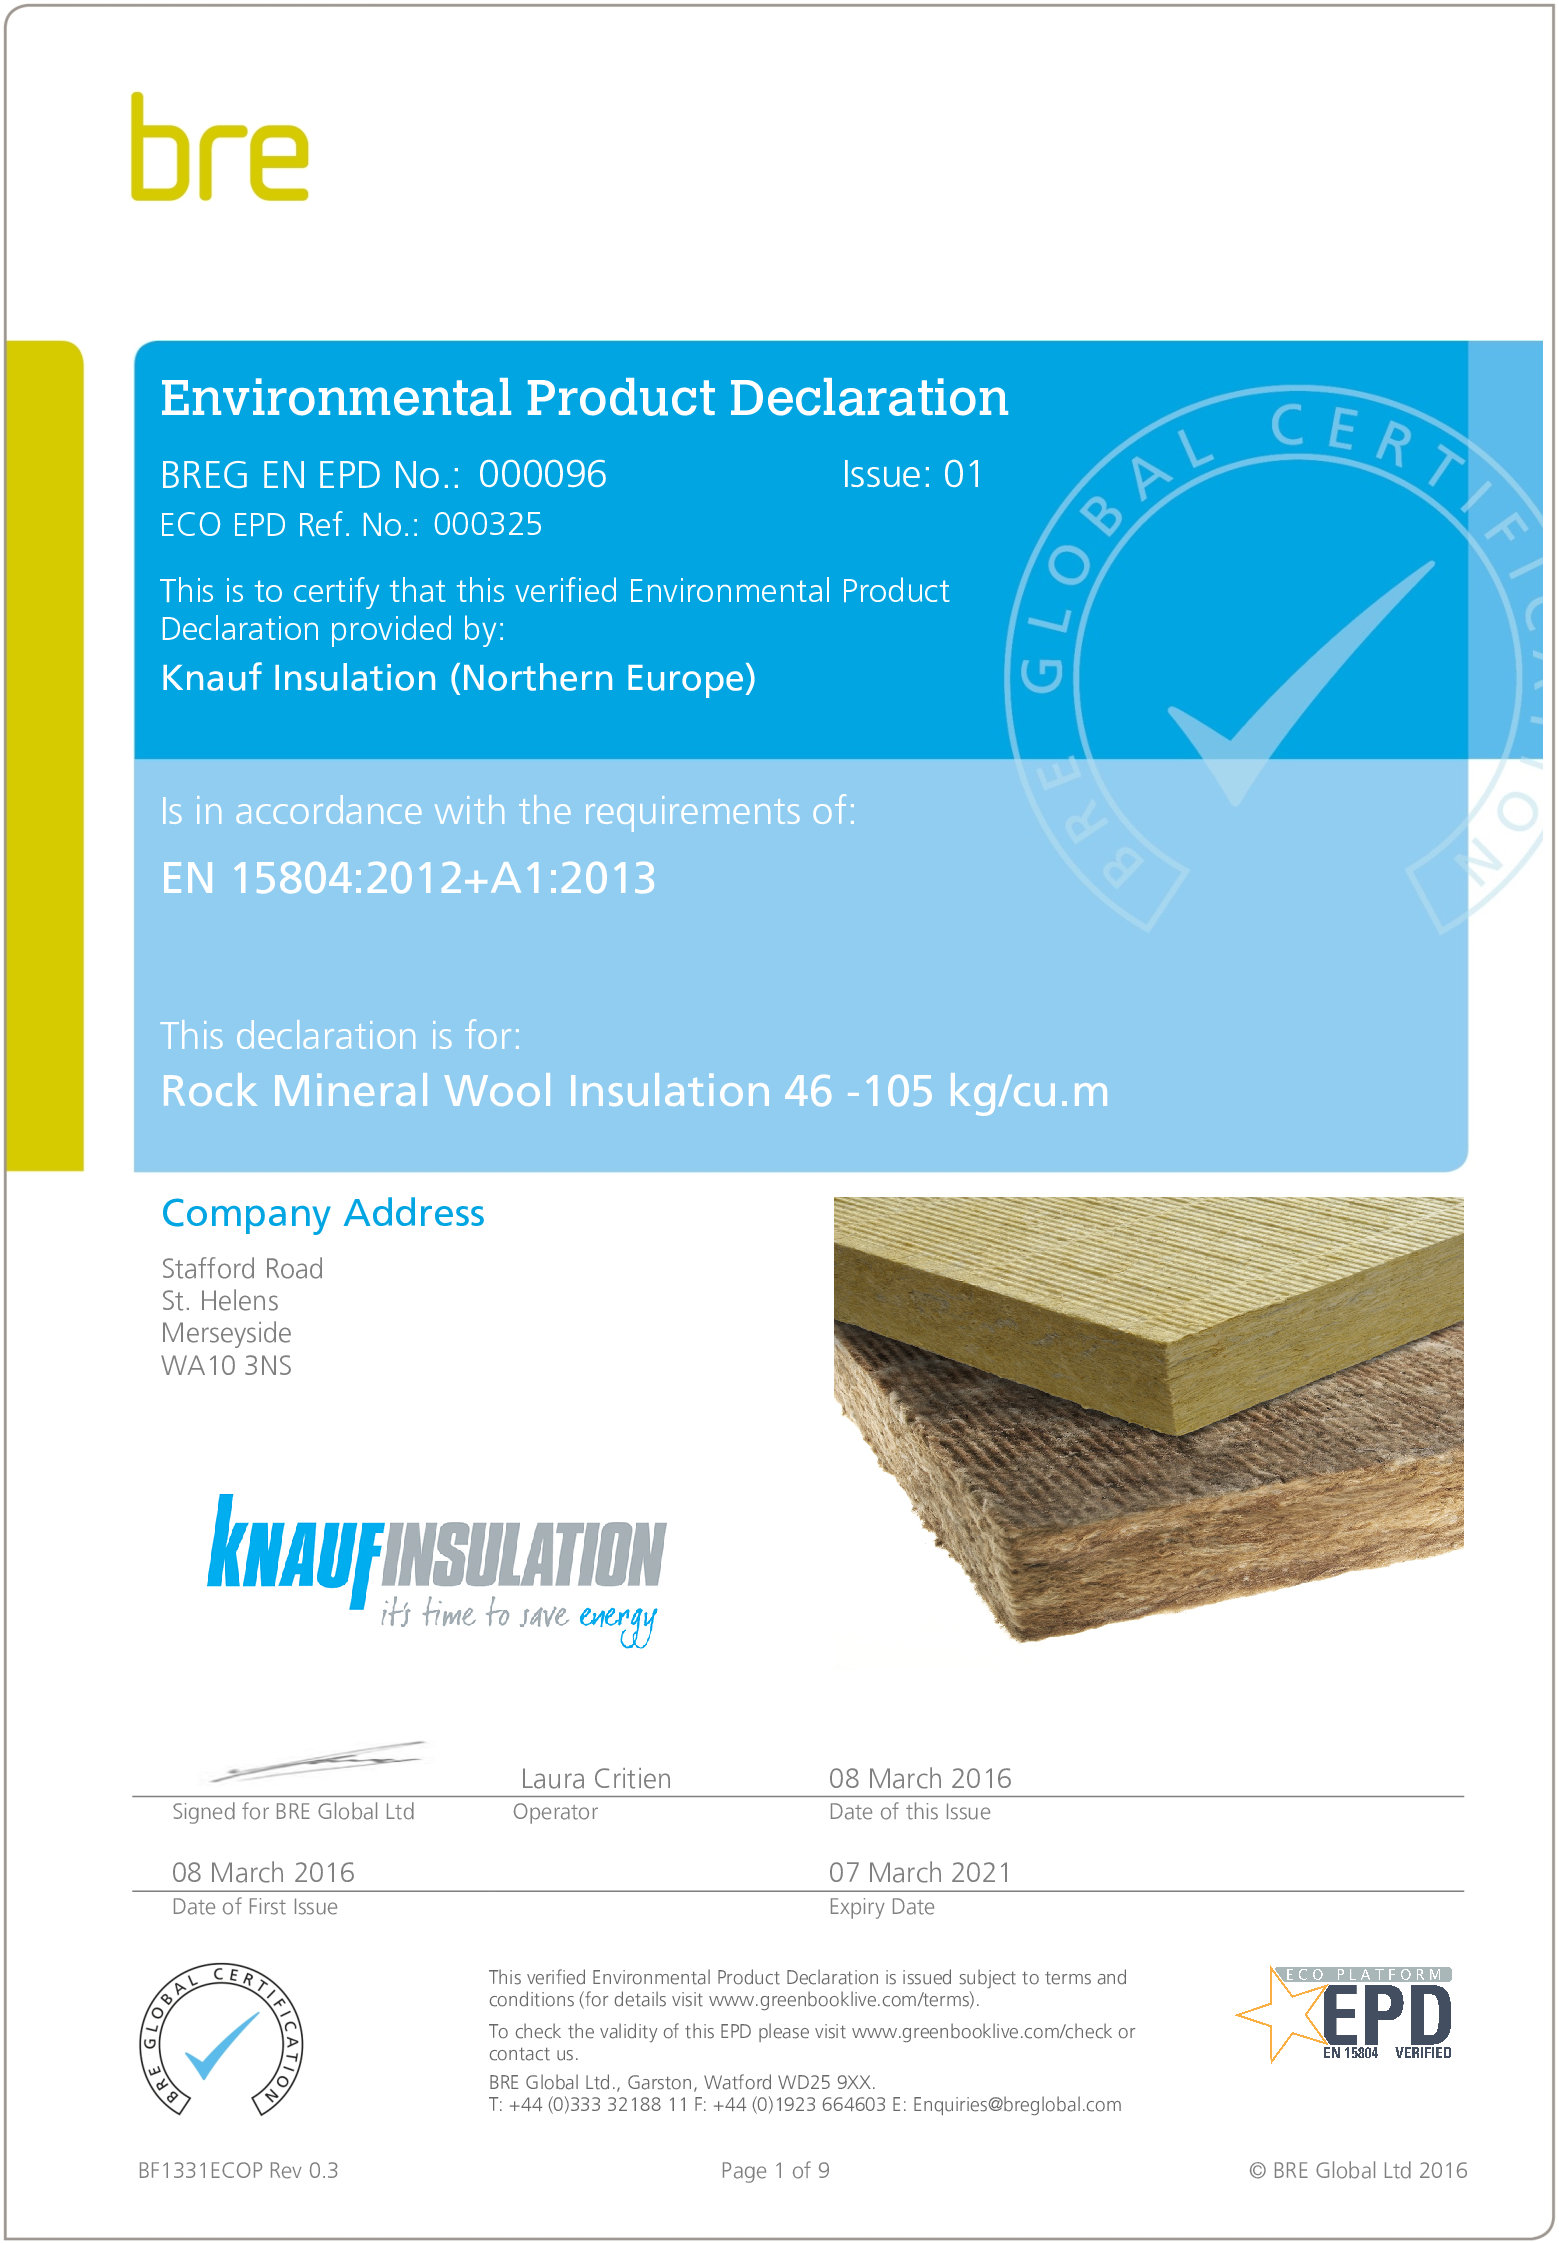 RMW Insulation 46 -105 kg/cu.m